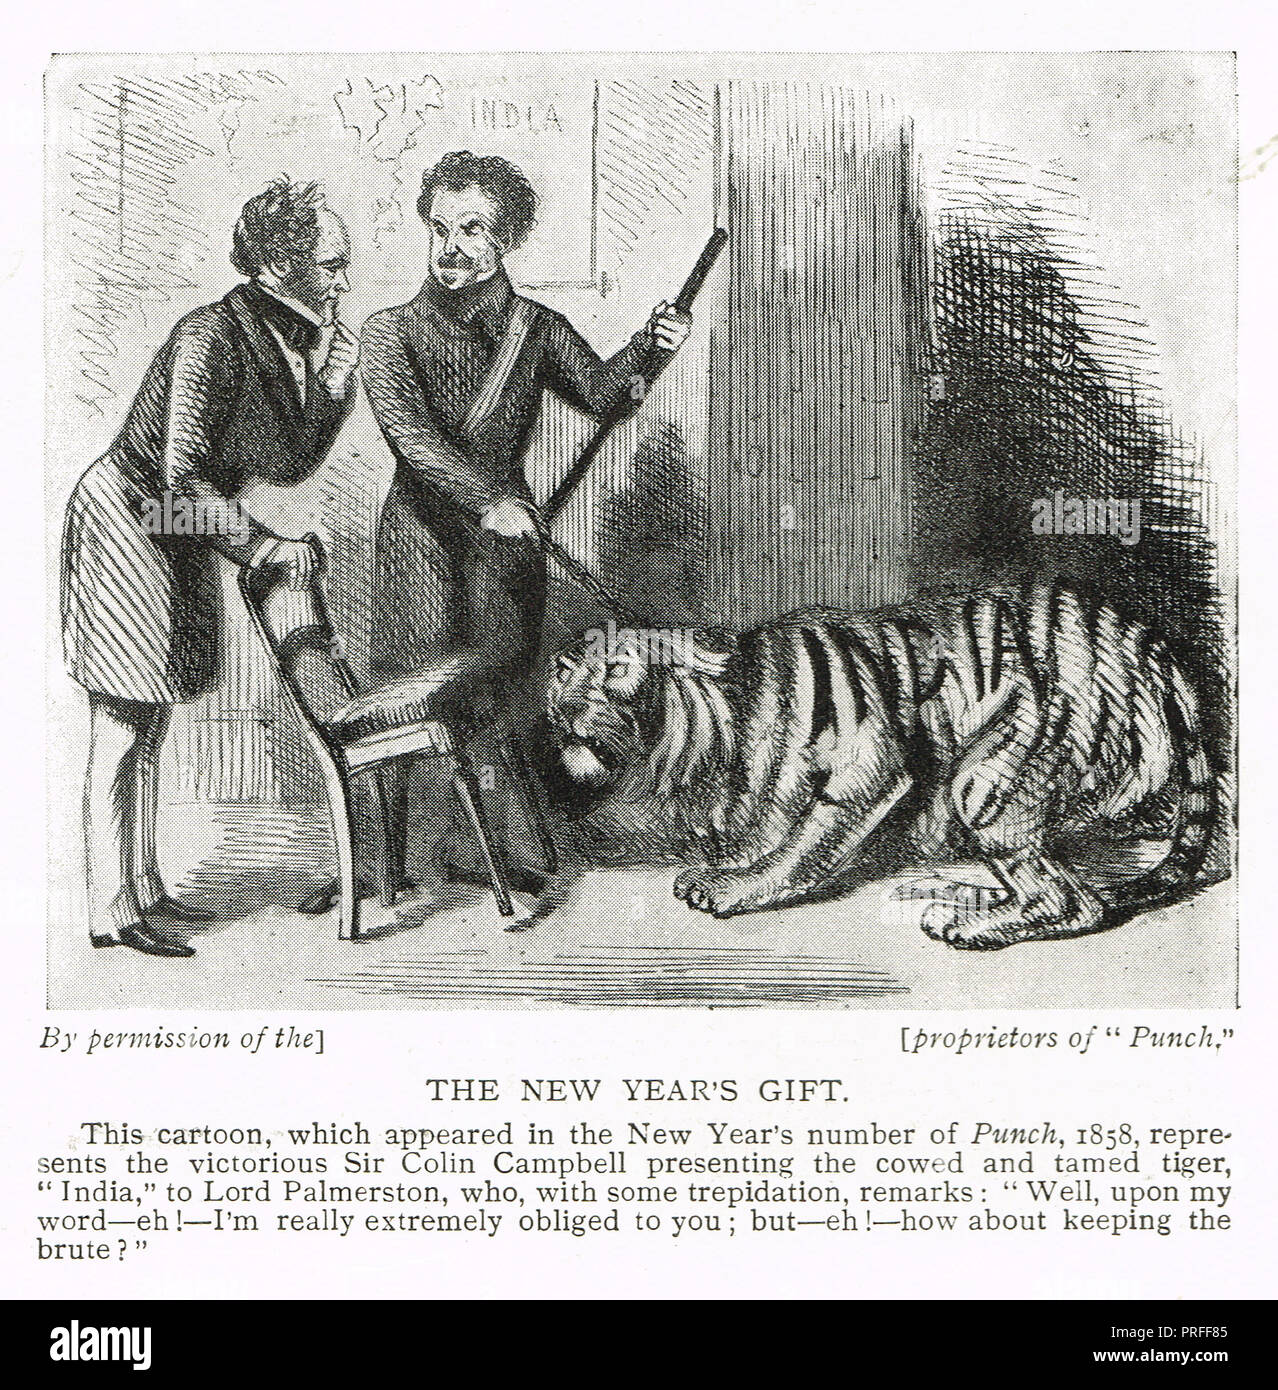 Caricature de perforation avec , avec Lord Palmerston, Sir Colin Campbell, en référençant le Sepoy mutinerie de 1857, intitulé la nouvelle année, le don, l'Inde est représentée par un tigre intimidé Banque D'Images